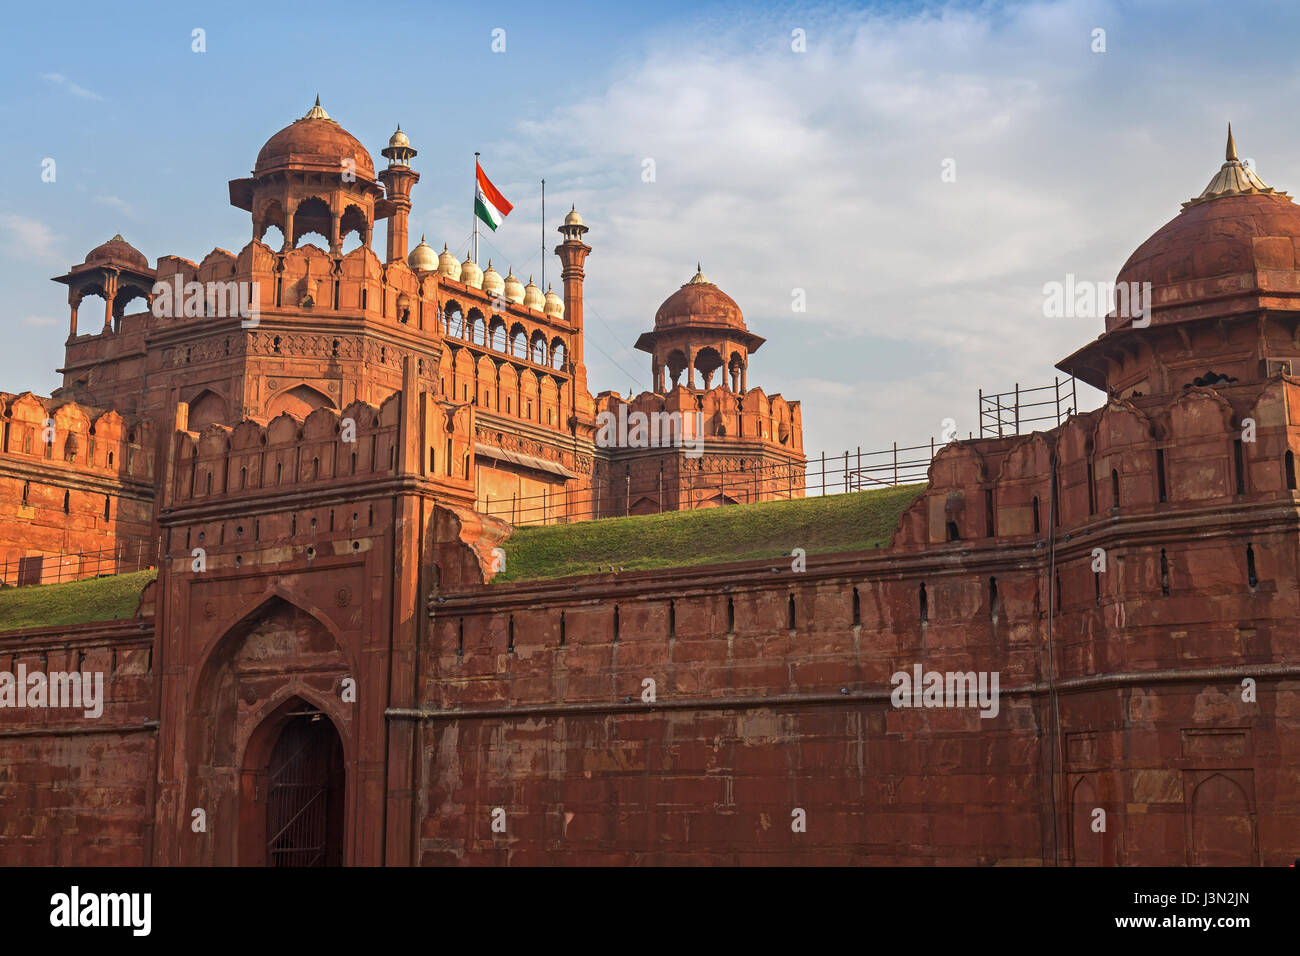 Red Fort Delhi ist ein roter Sandstein Fort Stadt von Kaiser Akbar gebaut. Ein Mughal Indien Architektur Struktur als UNESCO-Weltkulturerbe ausgewiesen. Stockfoto